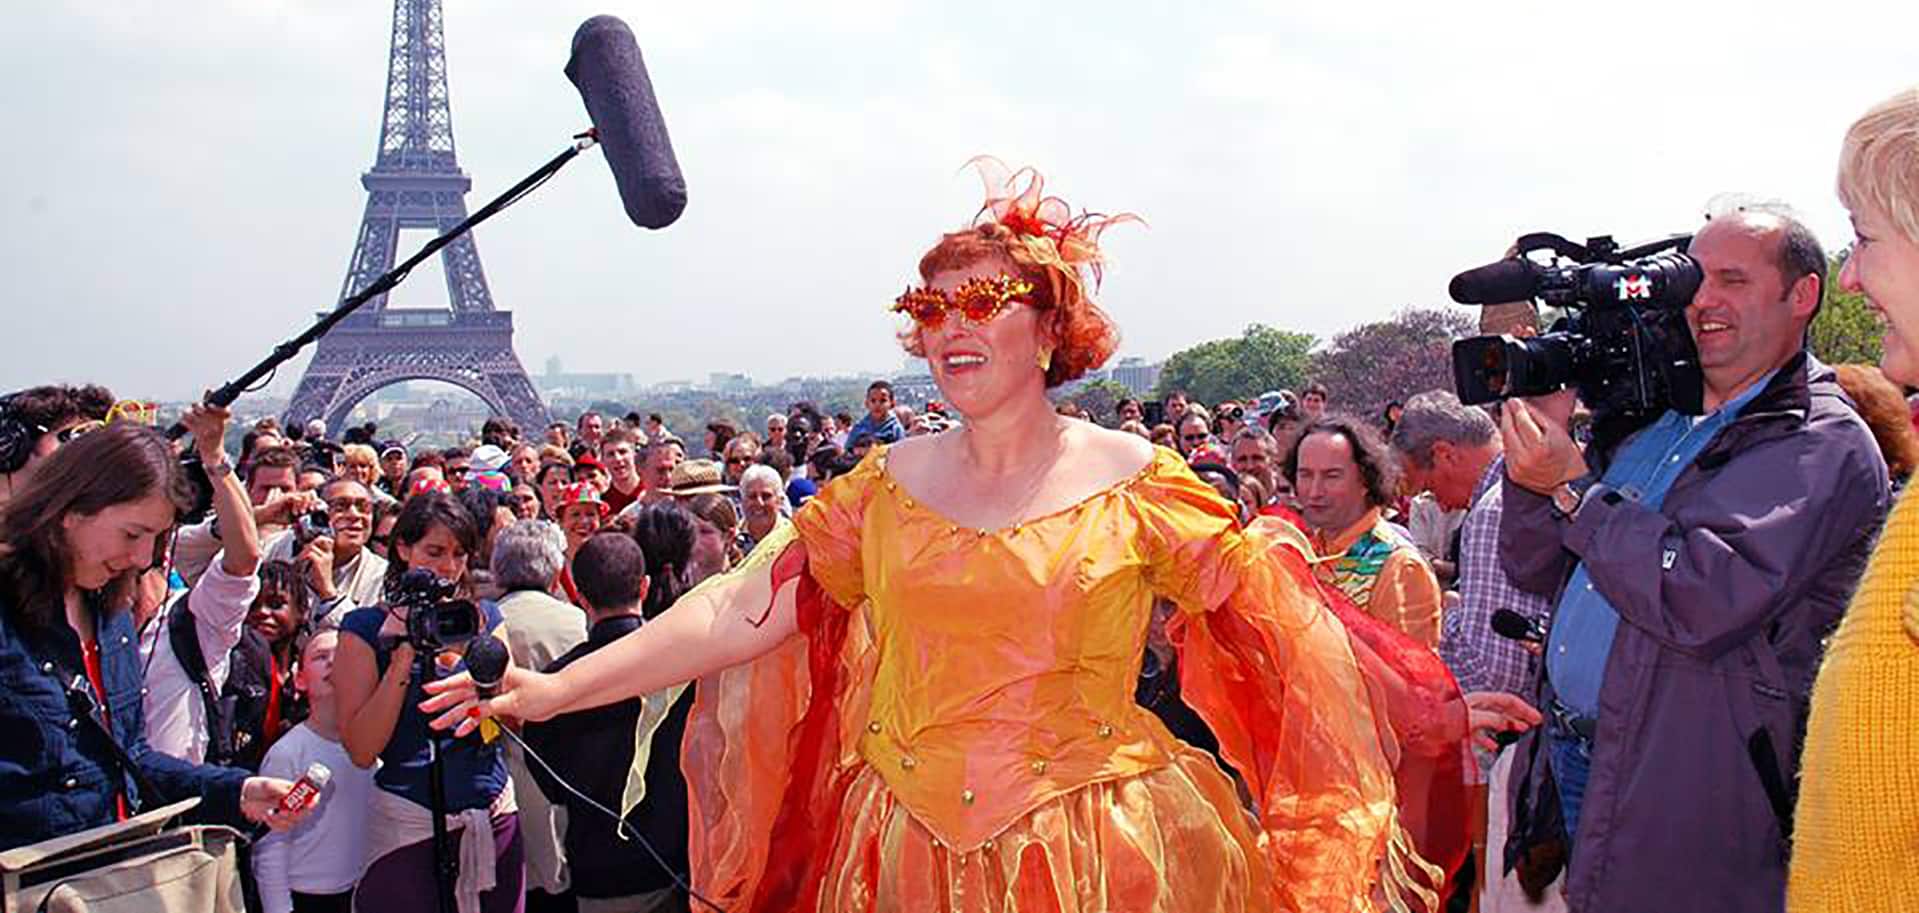 Corinne Cosseron Journée Mondiale du Rire Paris 2006